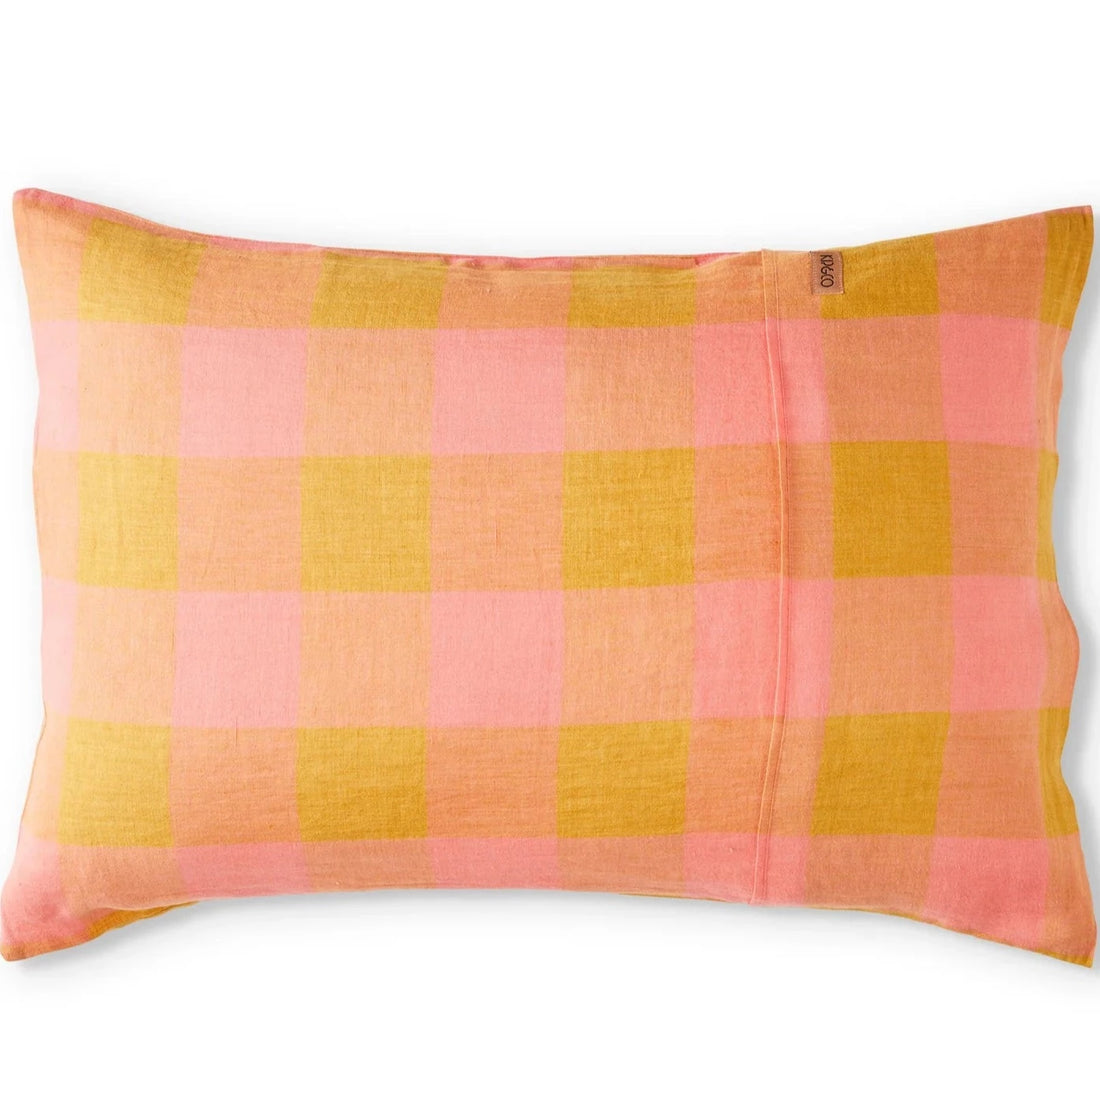 Toasted Marshmallow Linen Pillowcase Set